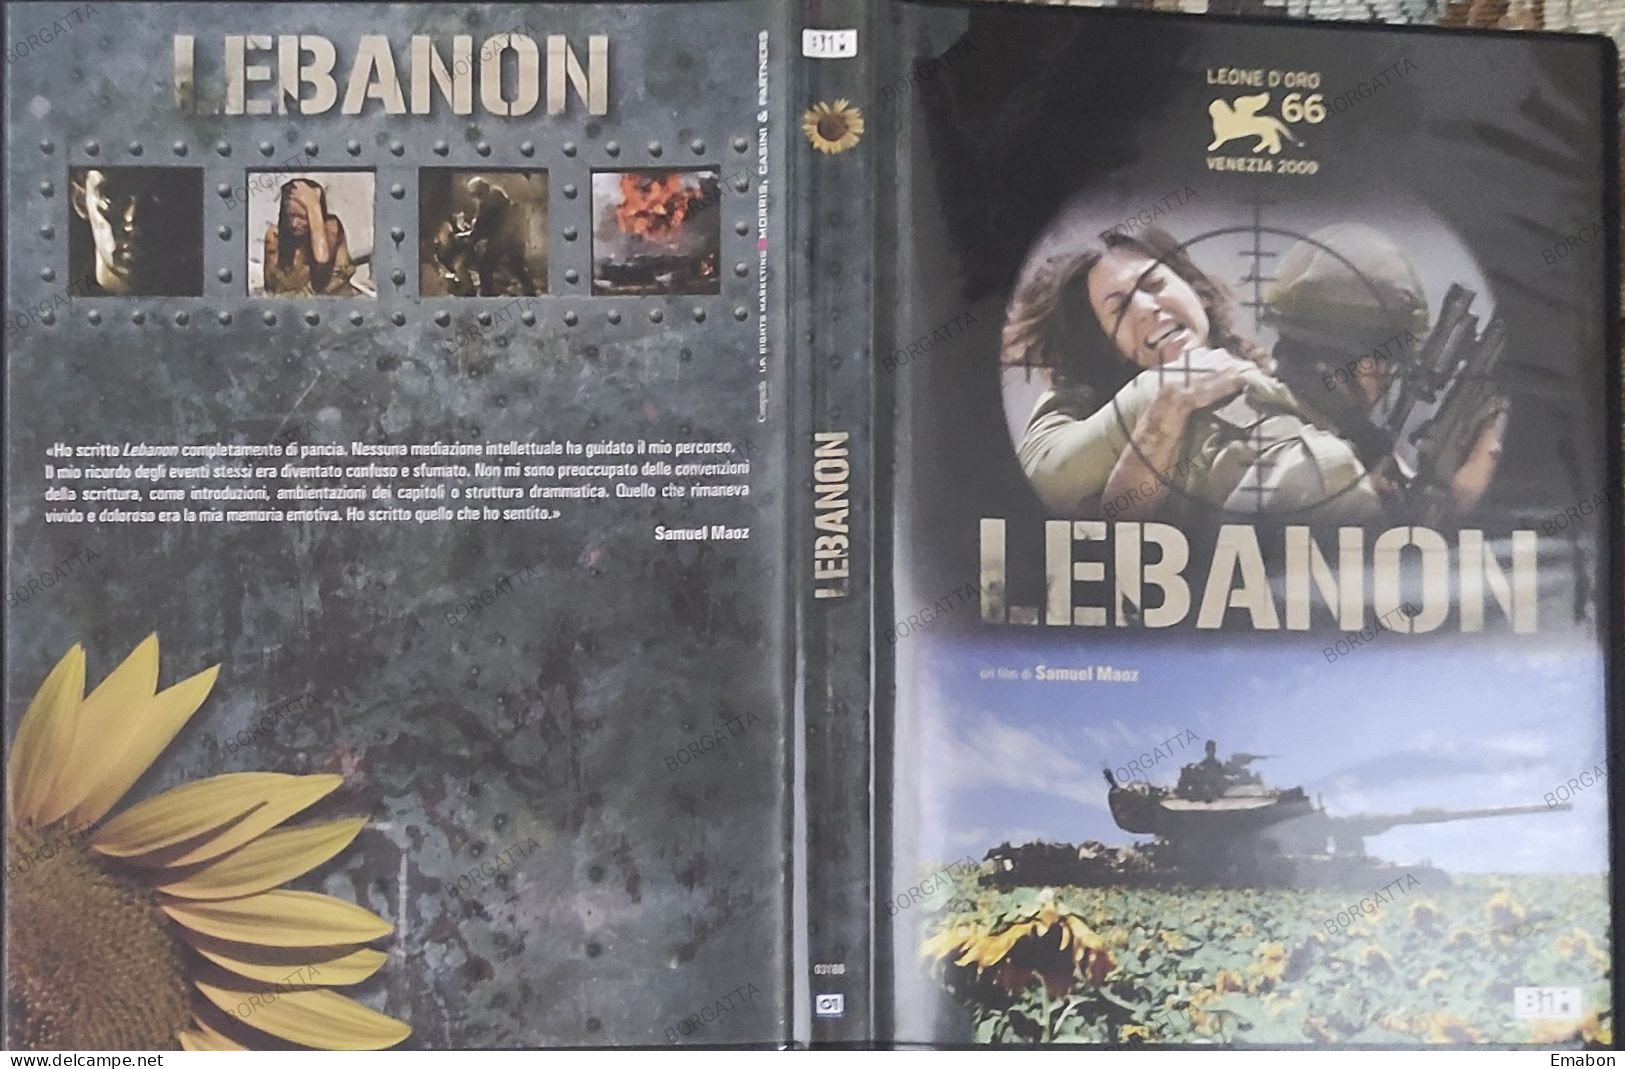 BORGATTA - GUERRA- Dvd  " LEBANON  " SAMUEL MAOZ - PAL 2 - BIM 2010-  USATO In Buono Stato - Drama